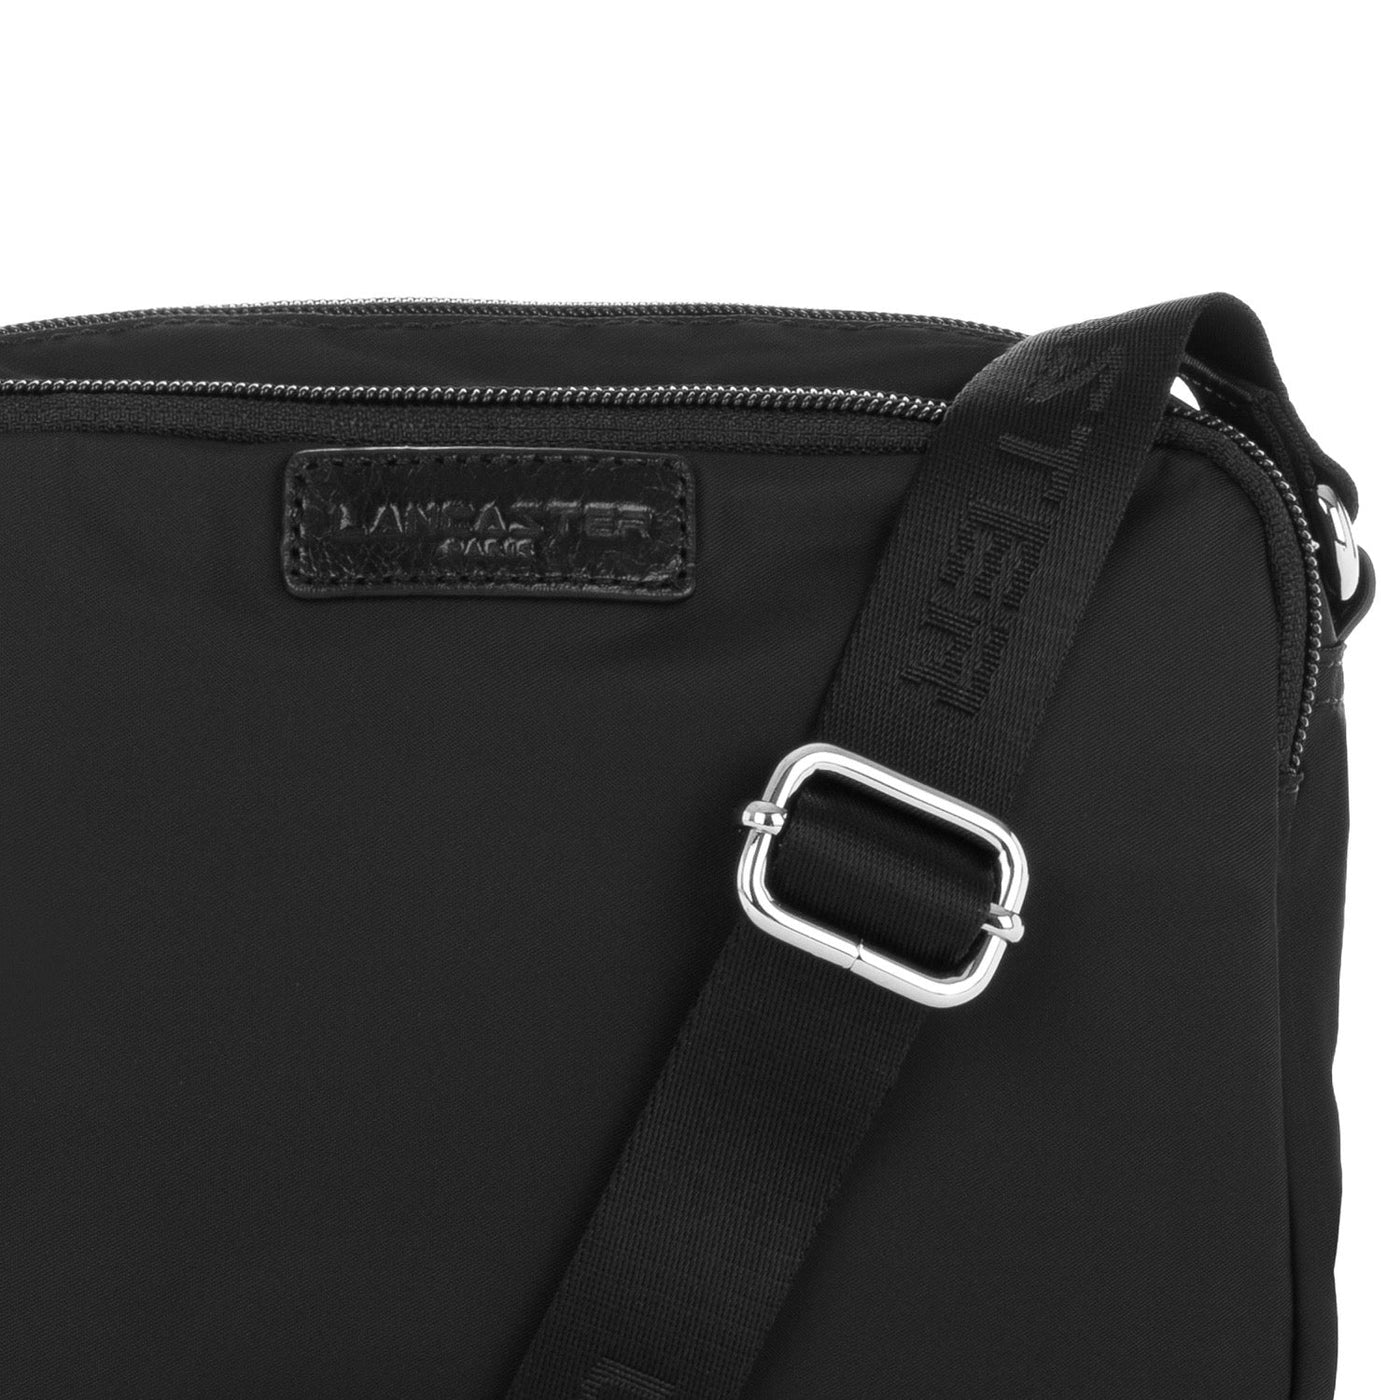 crossbody bag - basic pompon #couleur_noir